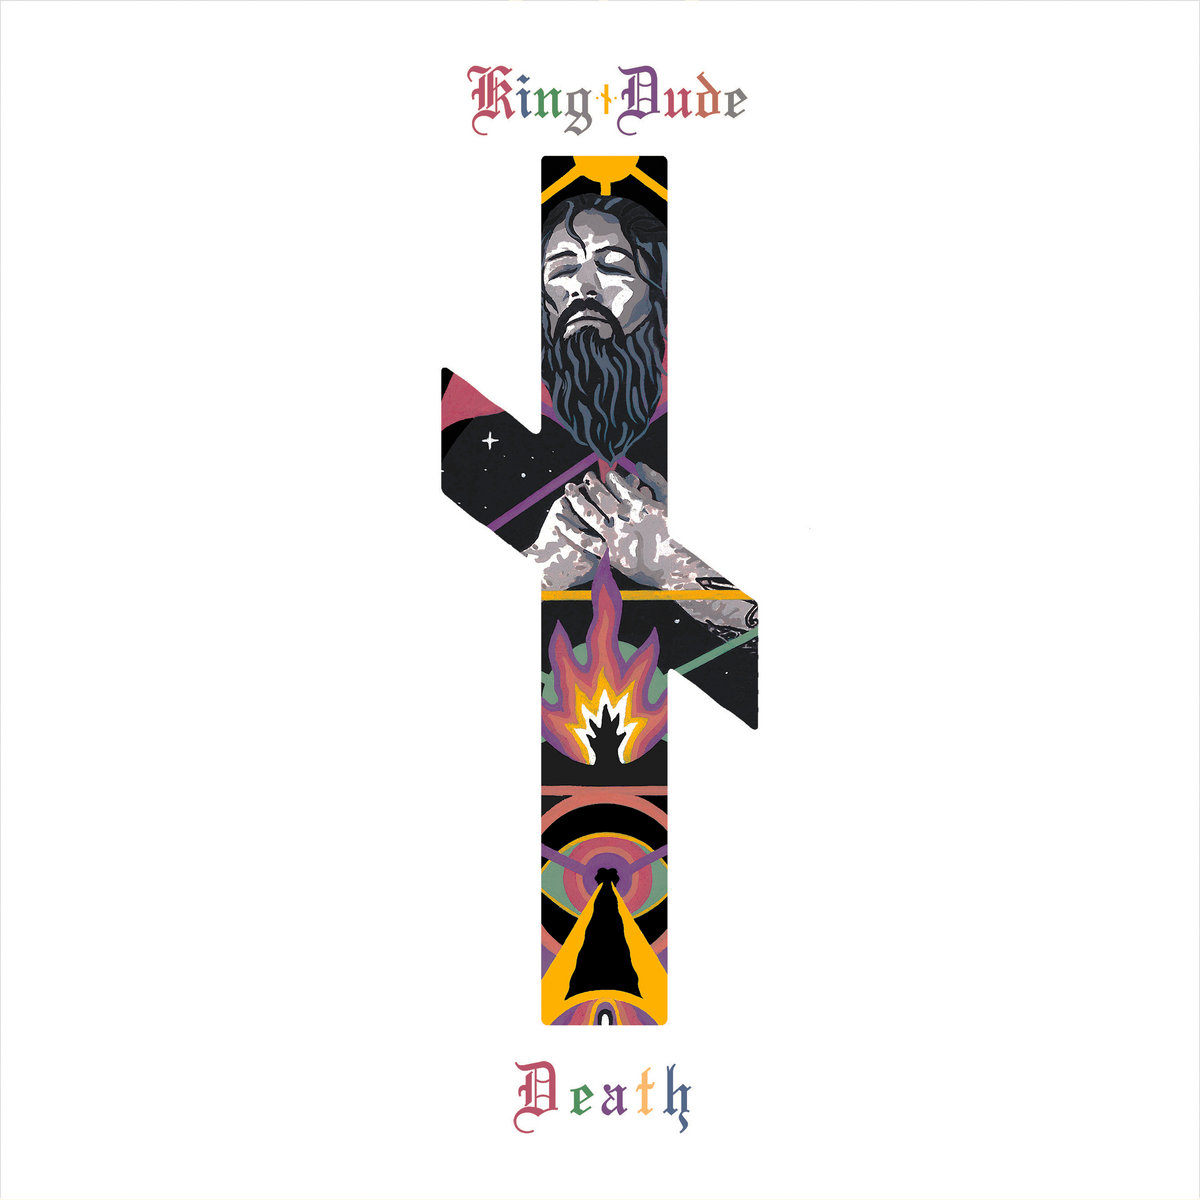 Chronique album King Dude – Death (gothic)